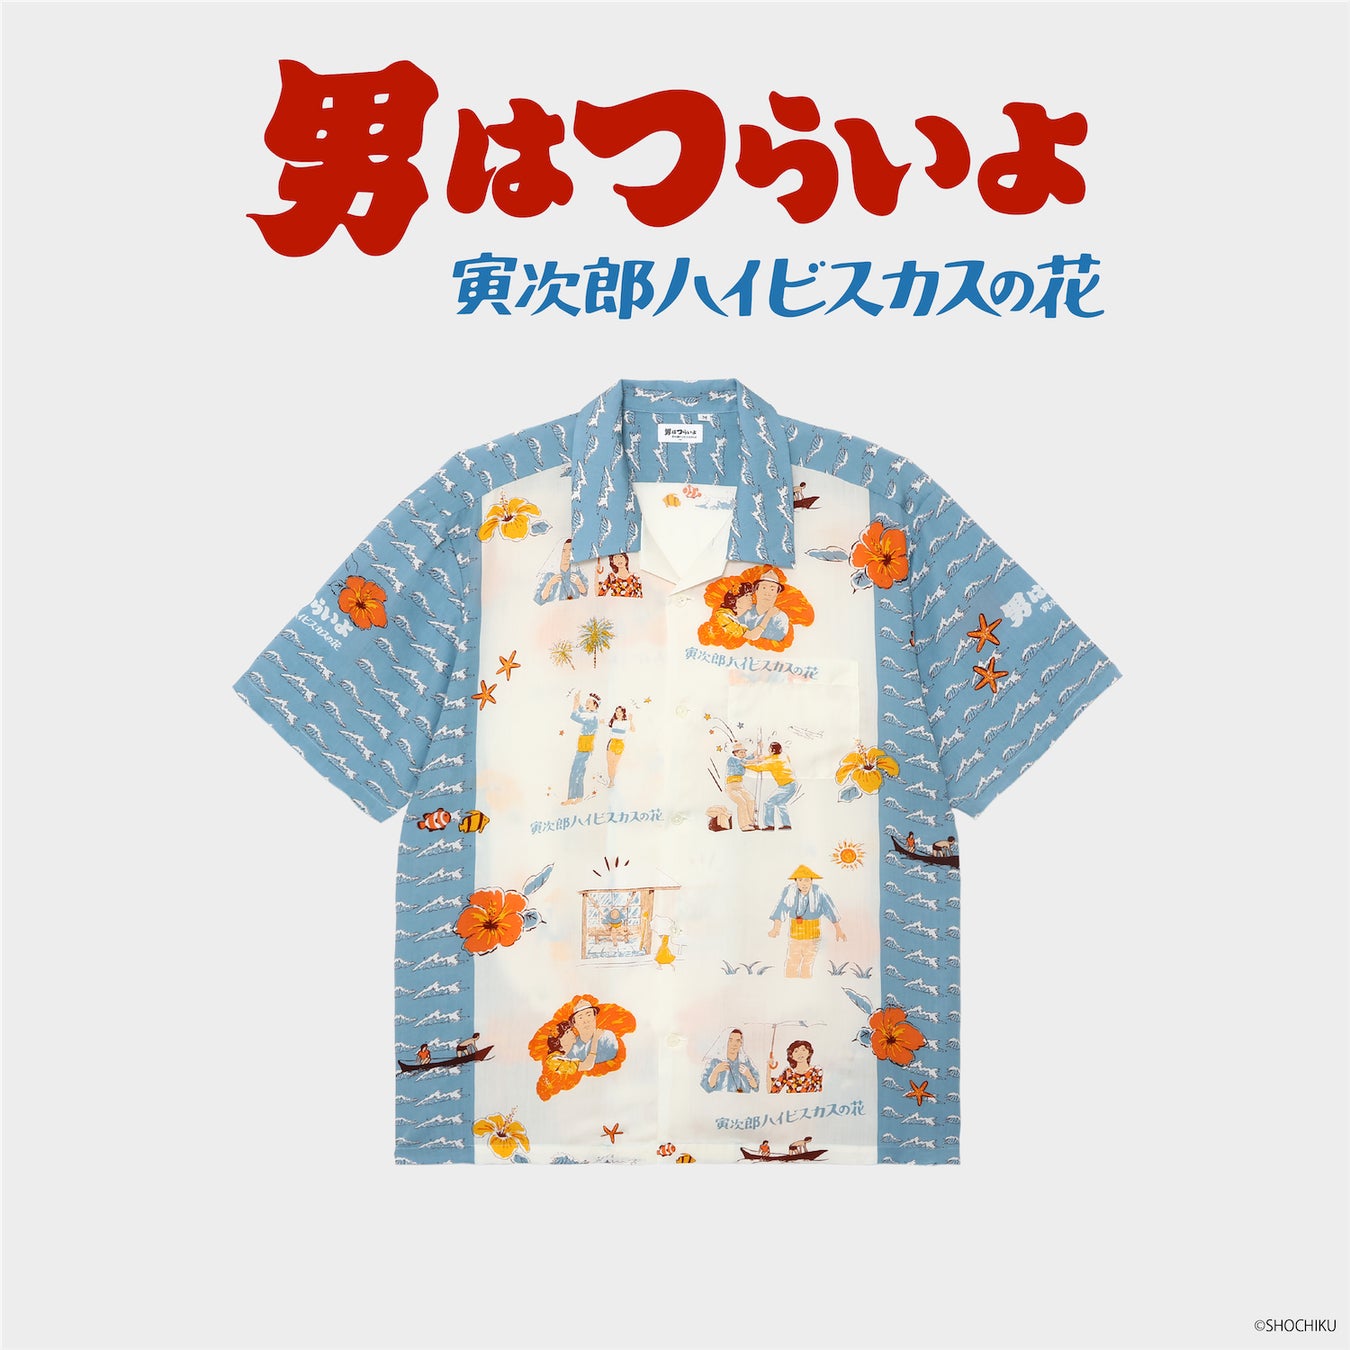 《2023年4月20日》Eanbe沖縄発アロハシャツブランド「Eanbe」、『男はつらいよ』とのコラボレーションアロハを販売